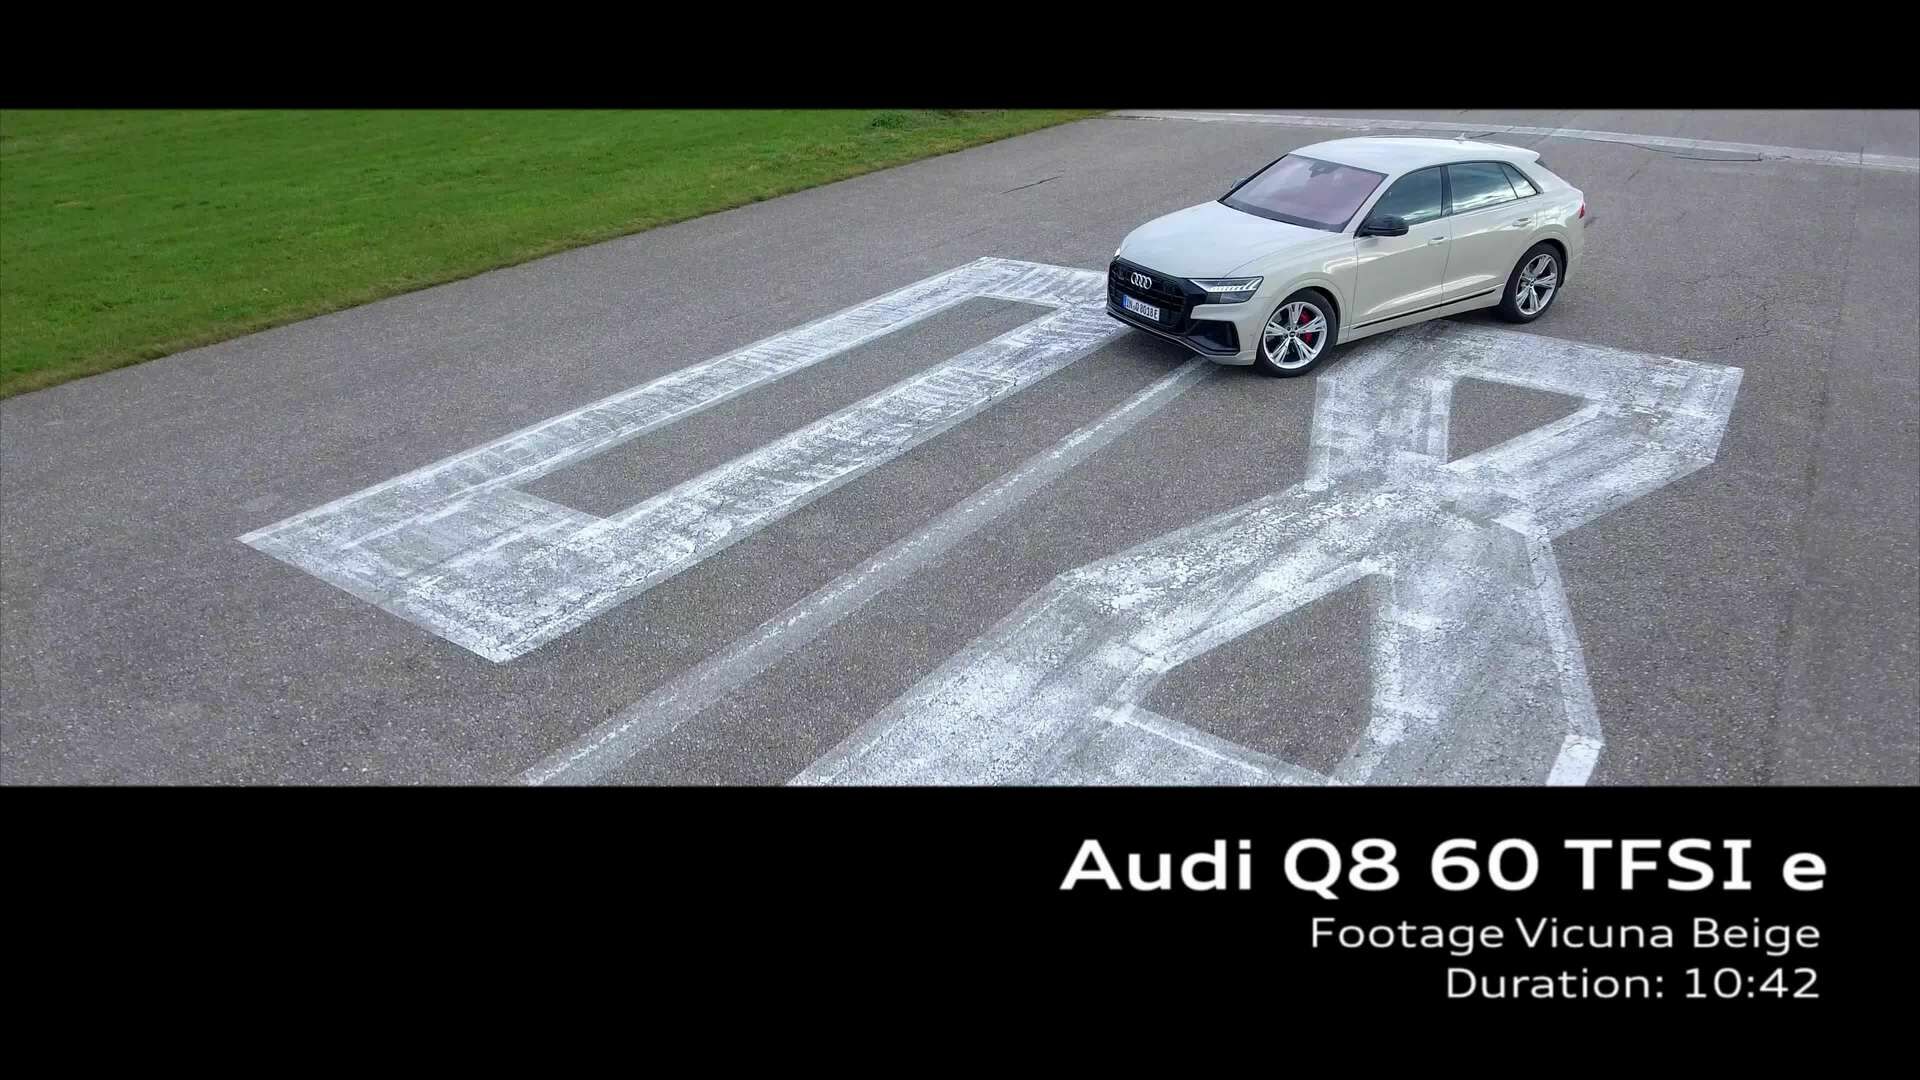 Footage: Audi Q8 TFSI e Vikunjabeige